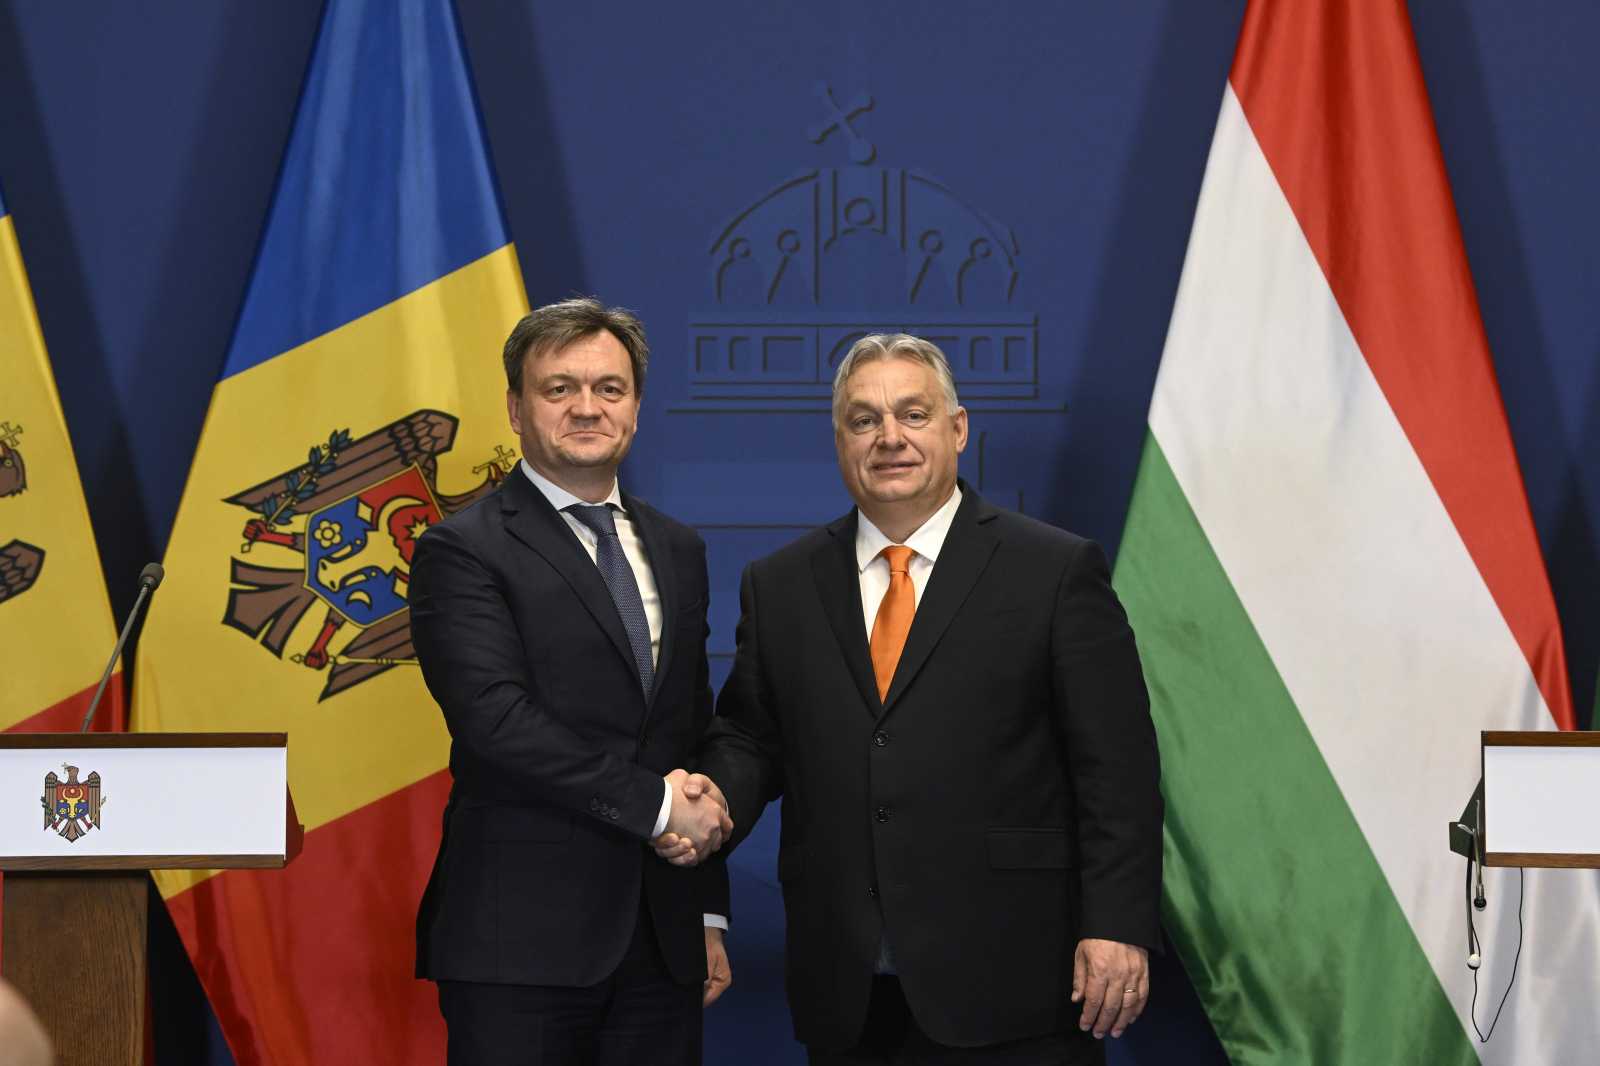 Dorin Recean és Orbán Viktor Budapesten tárgyalt Fotó: MTI 